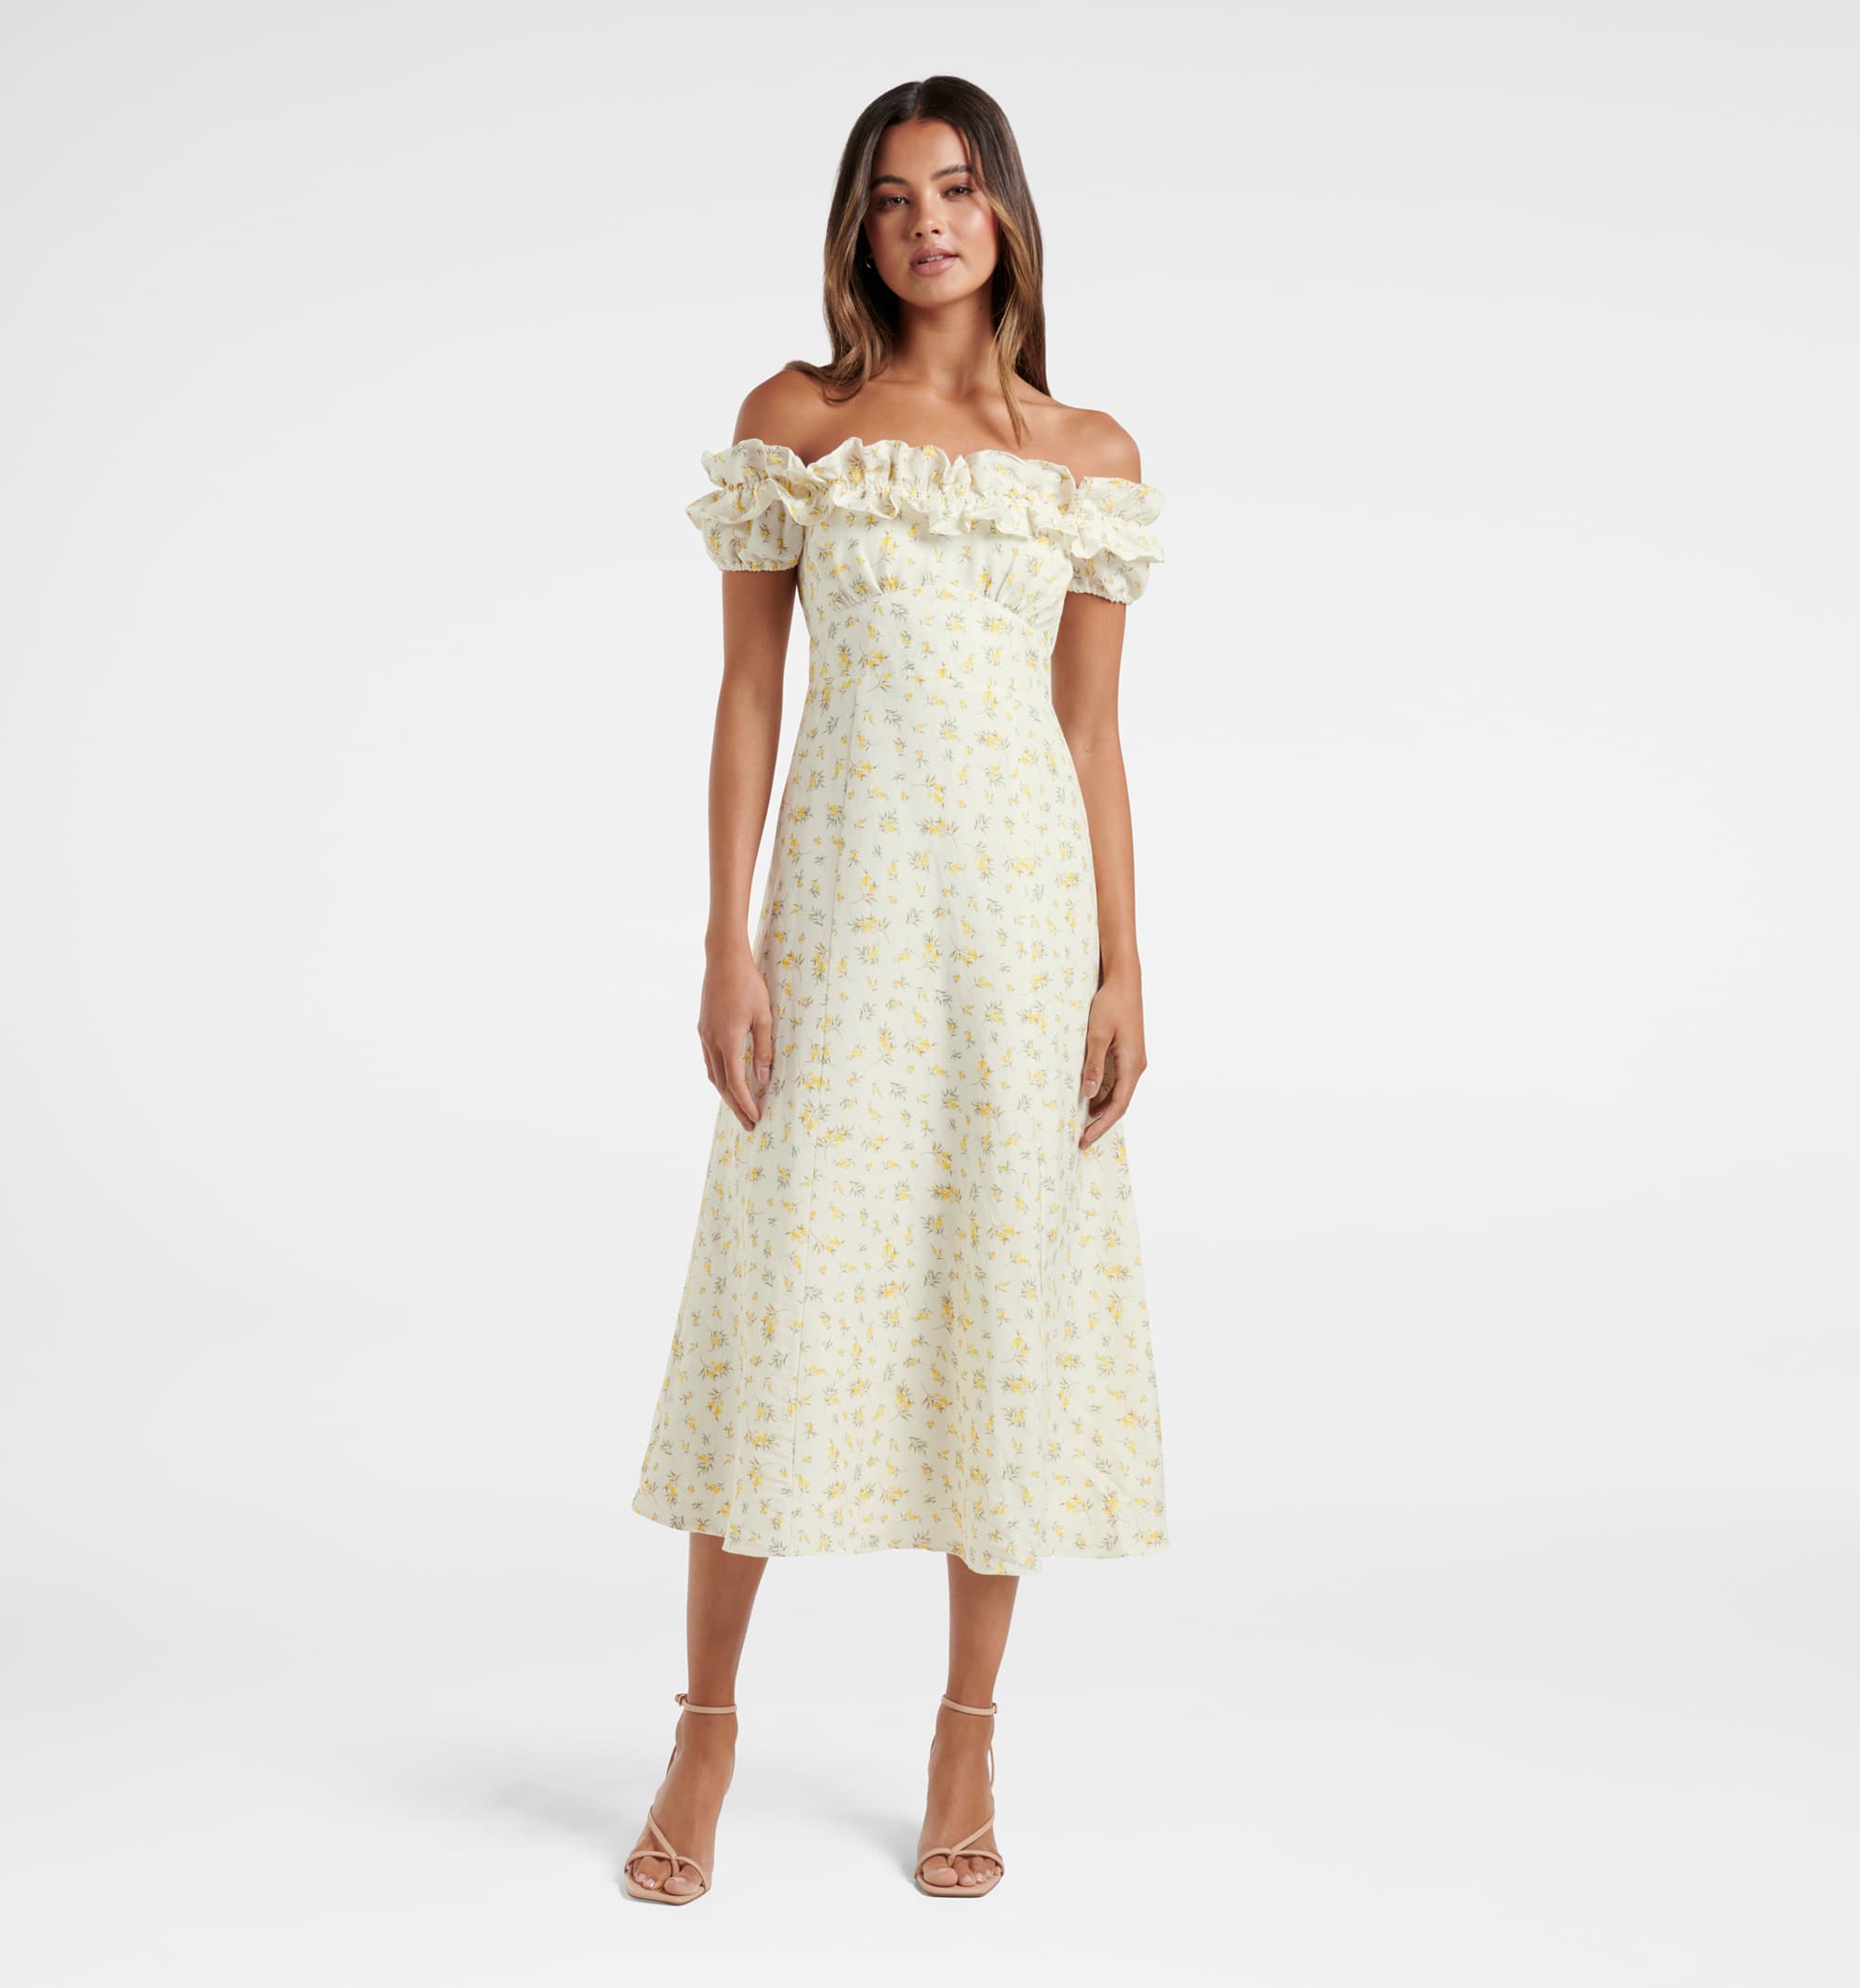 Chic Burgundy Off Shoulder Floor Length Satin Lace Prom Dresses – Pgmdress